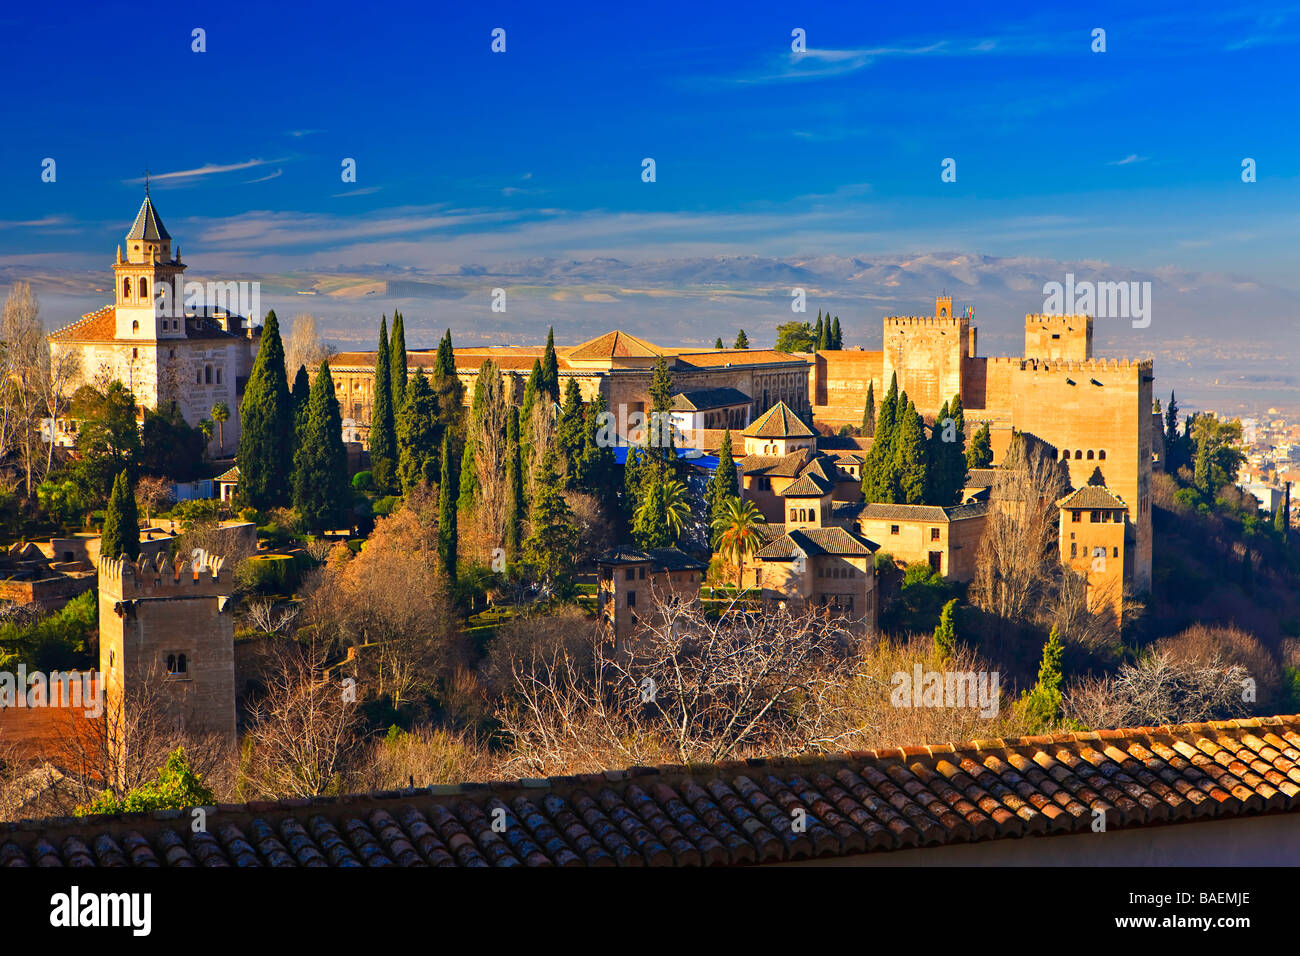 Vue de l'Alhambra (Alhambra) de la partie supérieure des jardins du Generalife - désigné Site du patrimoine mondial de l'UNESCO, Grenade Banque D'Images